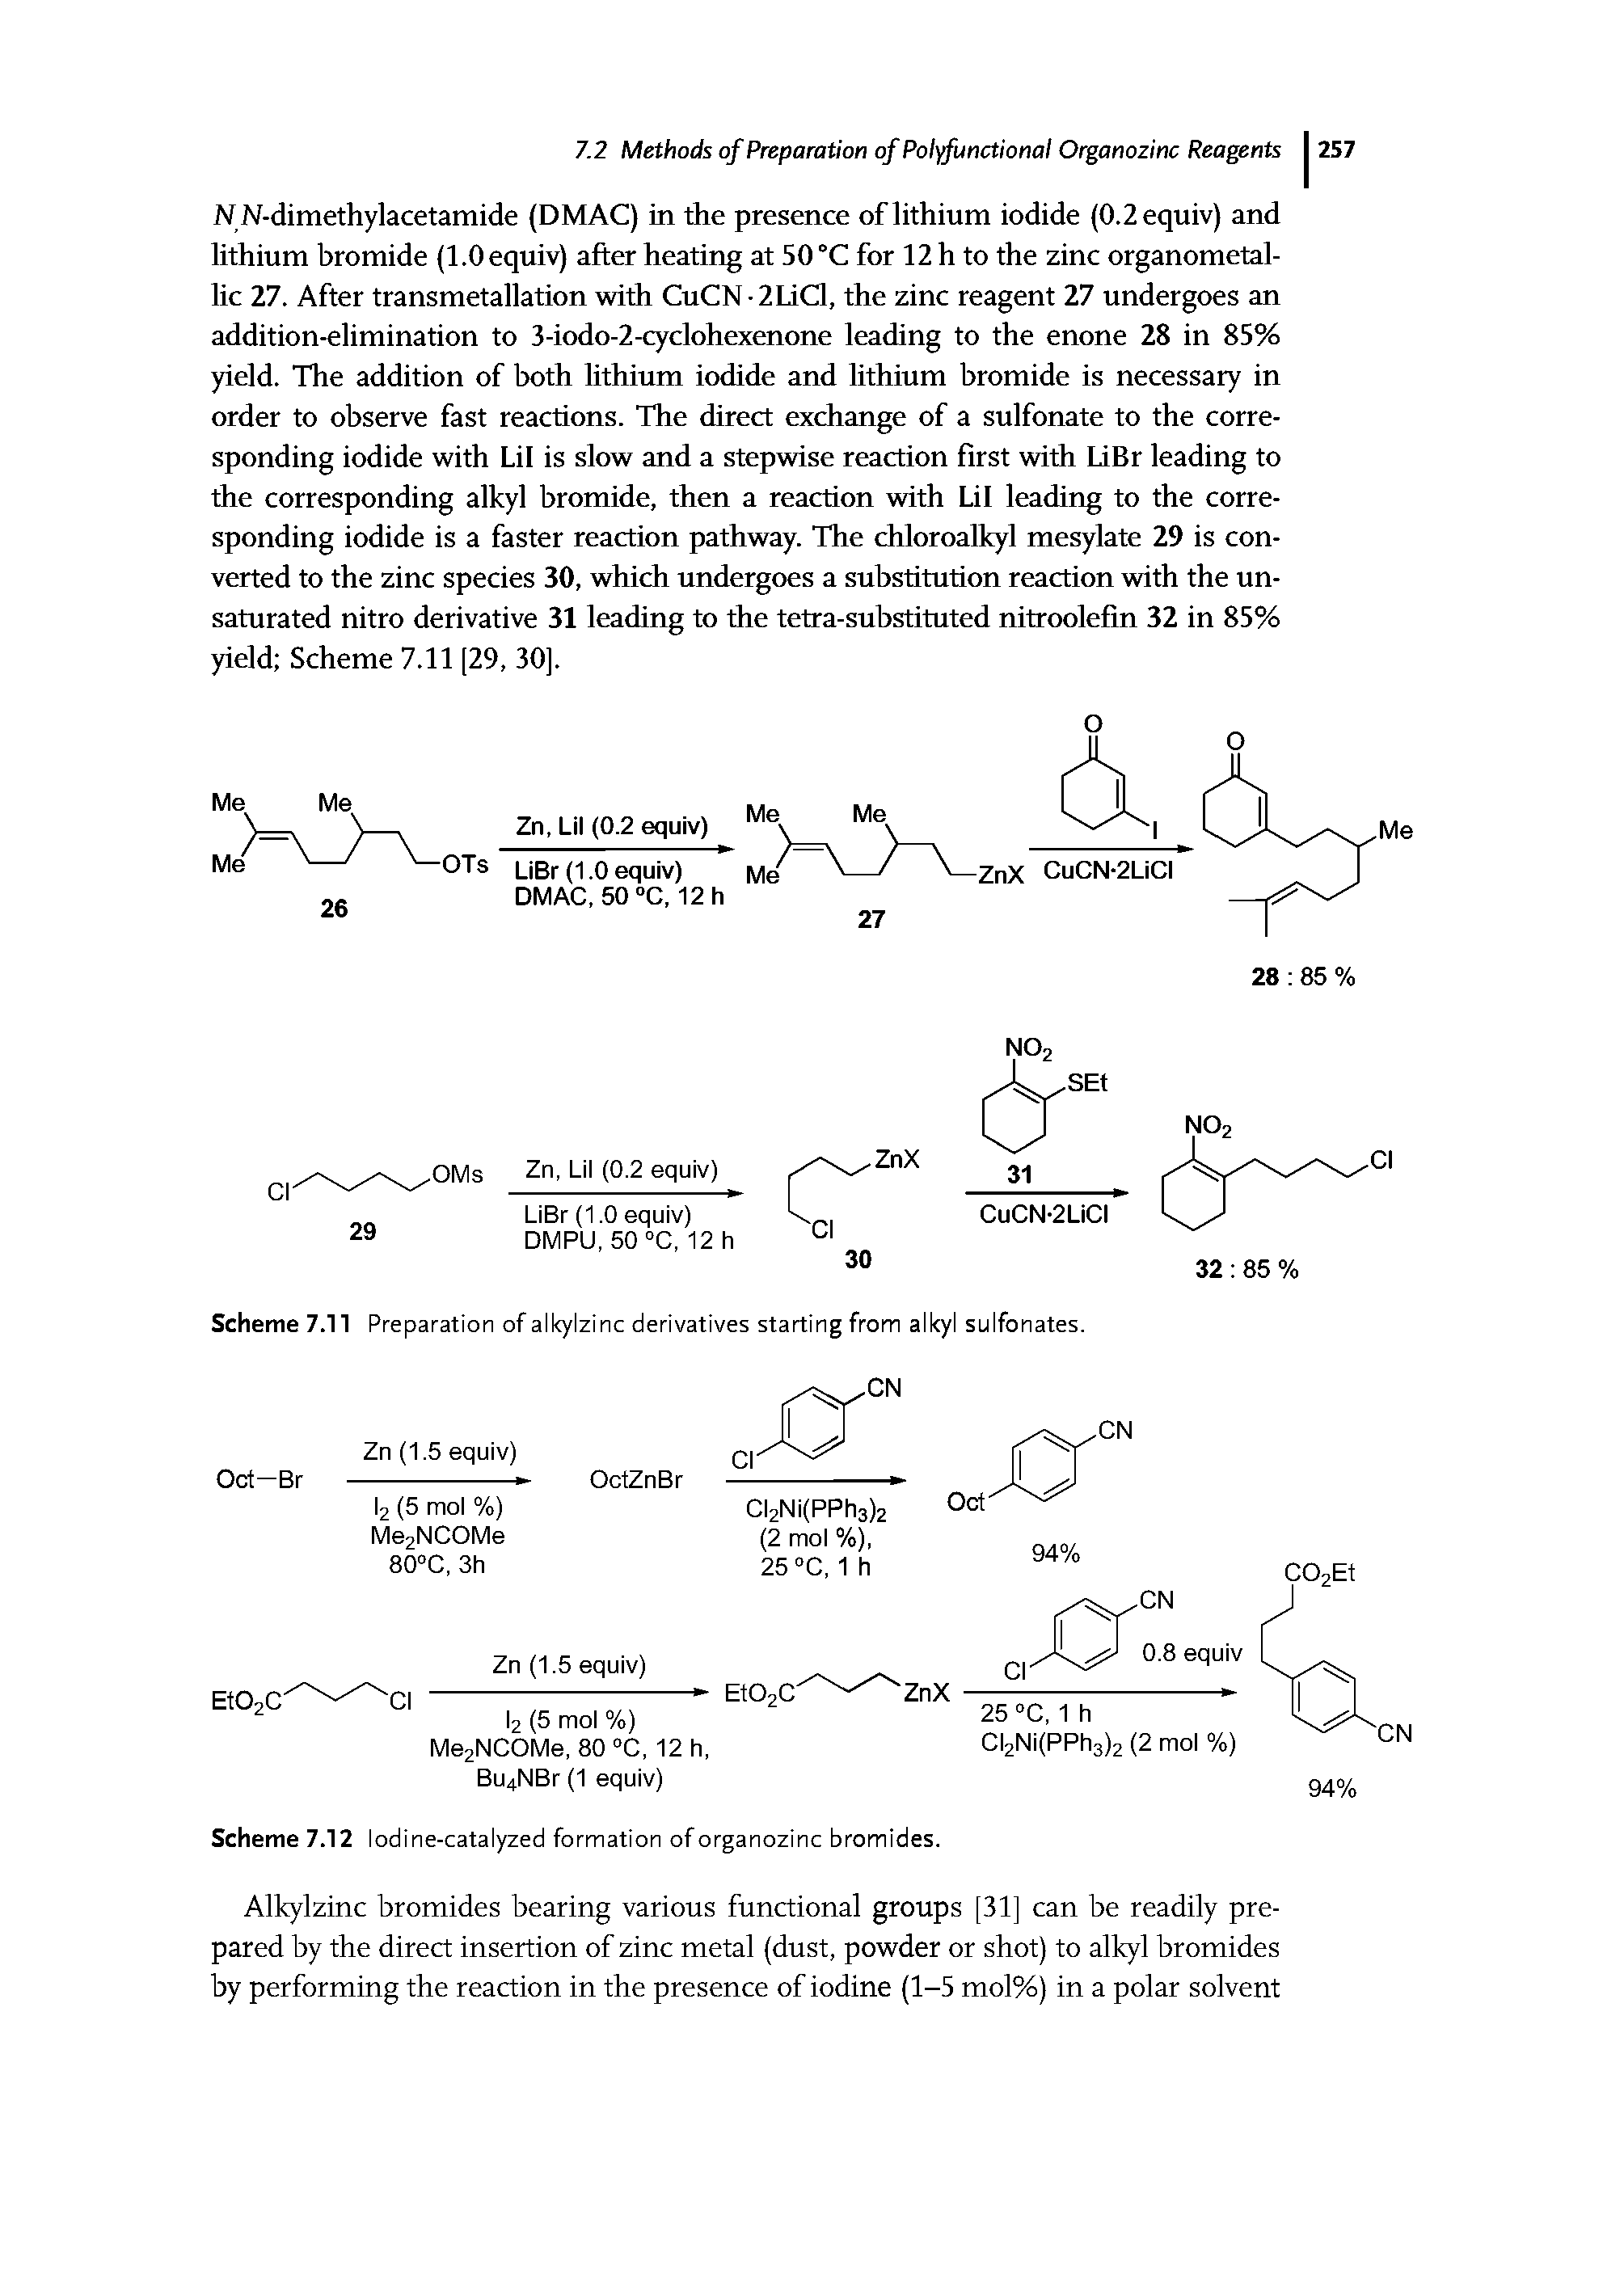 Scheme 7.11 Preparation of alkylzinc derivatives starting from alkyl sulfonates.